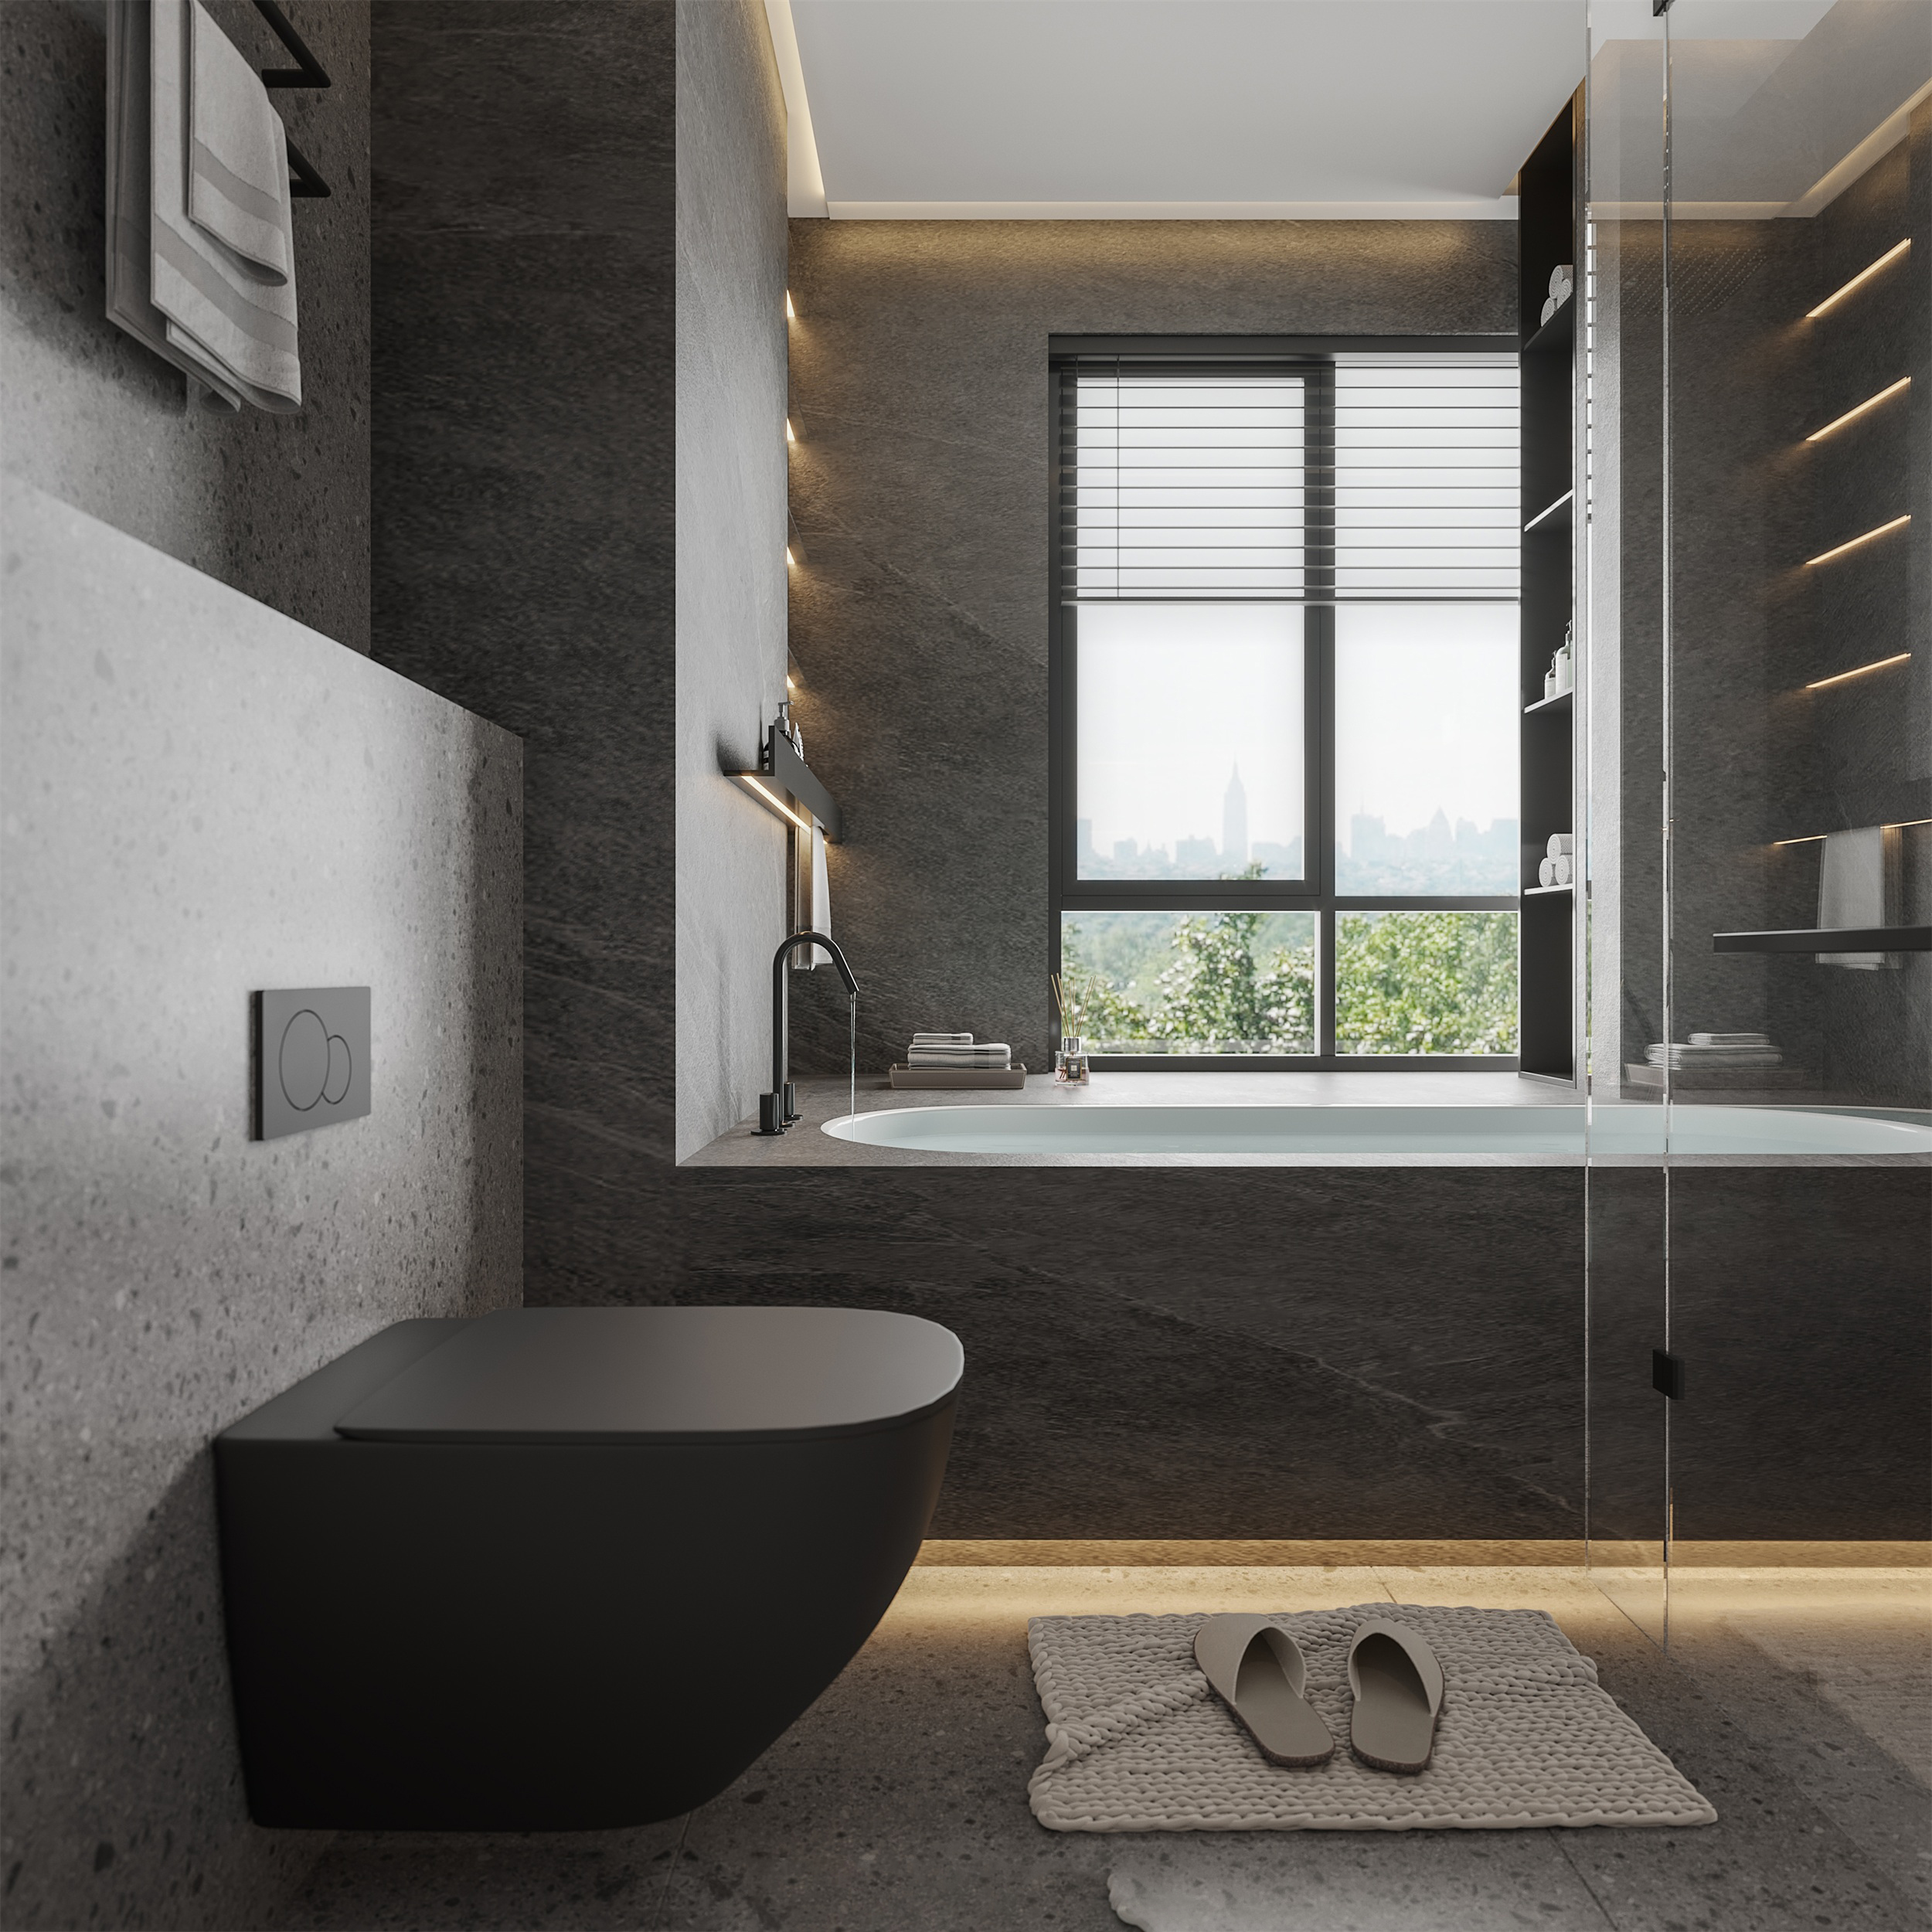 以黑灰色為主色調，搭配黑色五金及玻璃門以及線條燈管設計，凸顯出現代風格的浴室設計